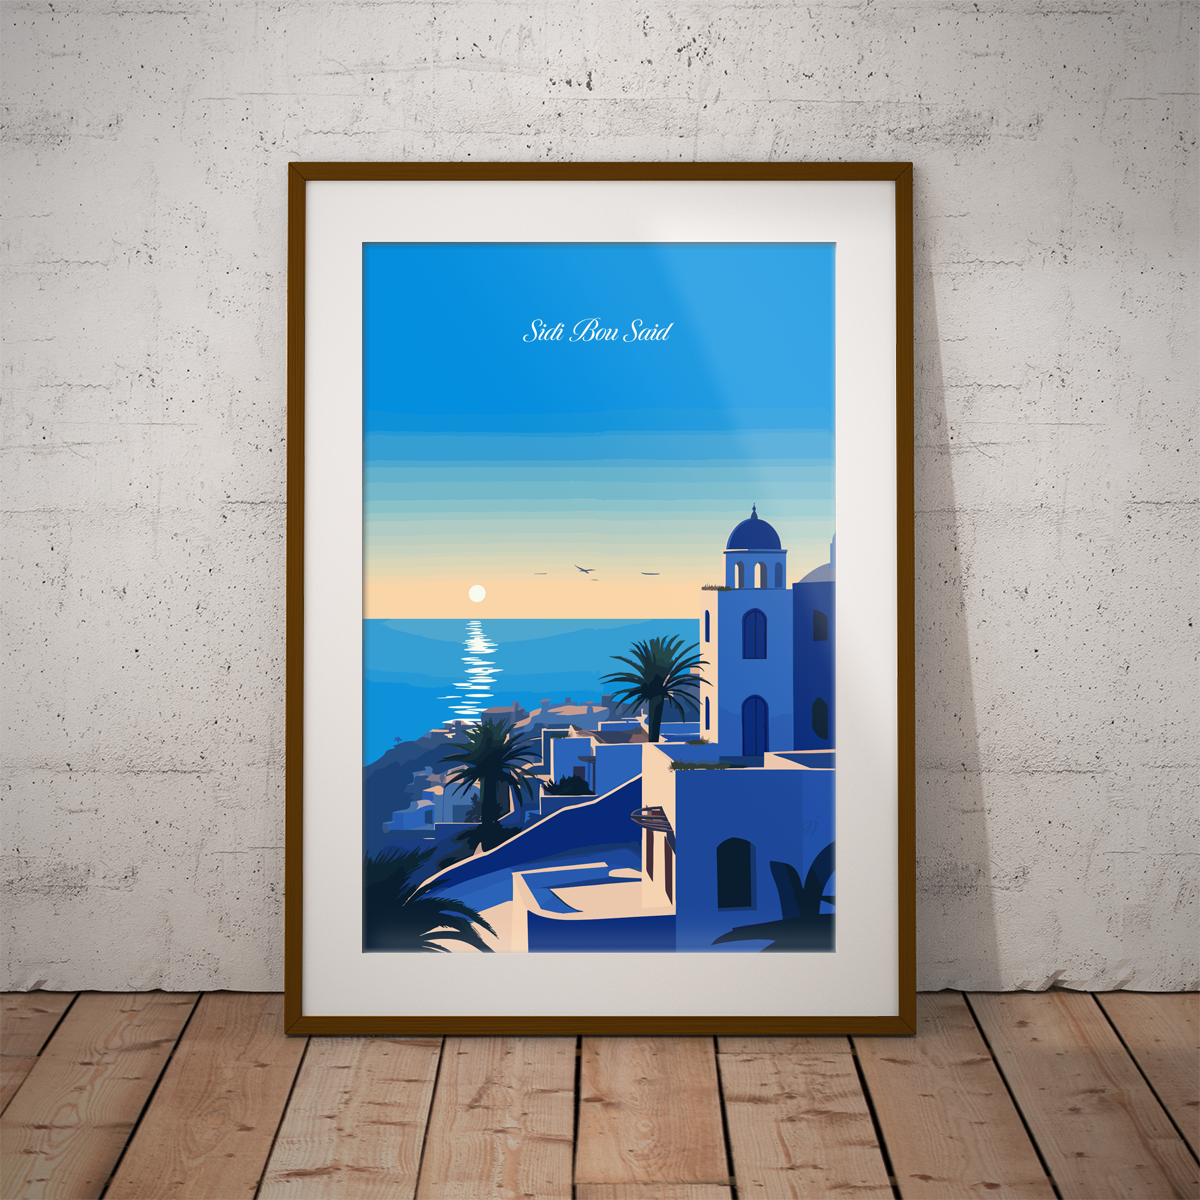 Sidi Bou Said poster by bon voyage design